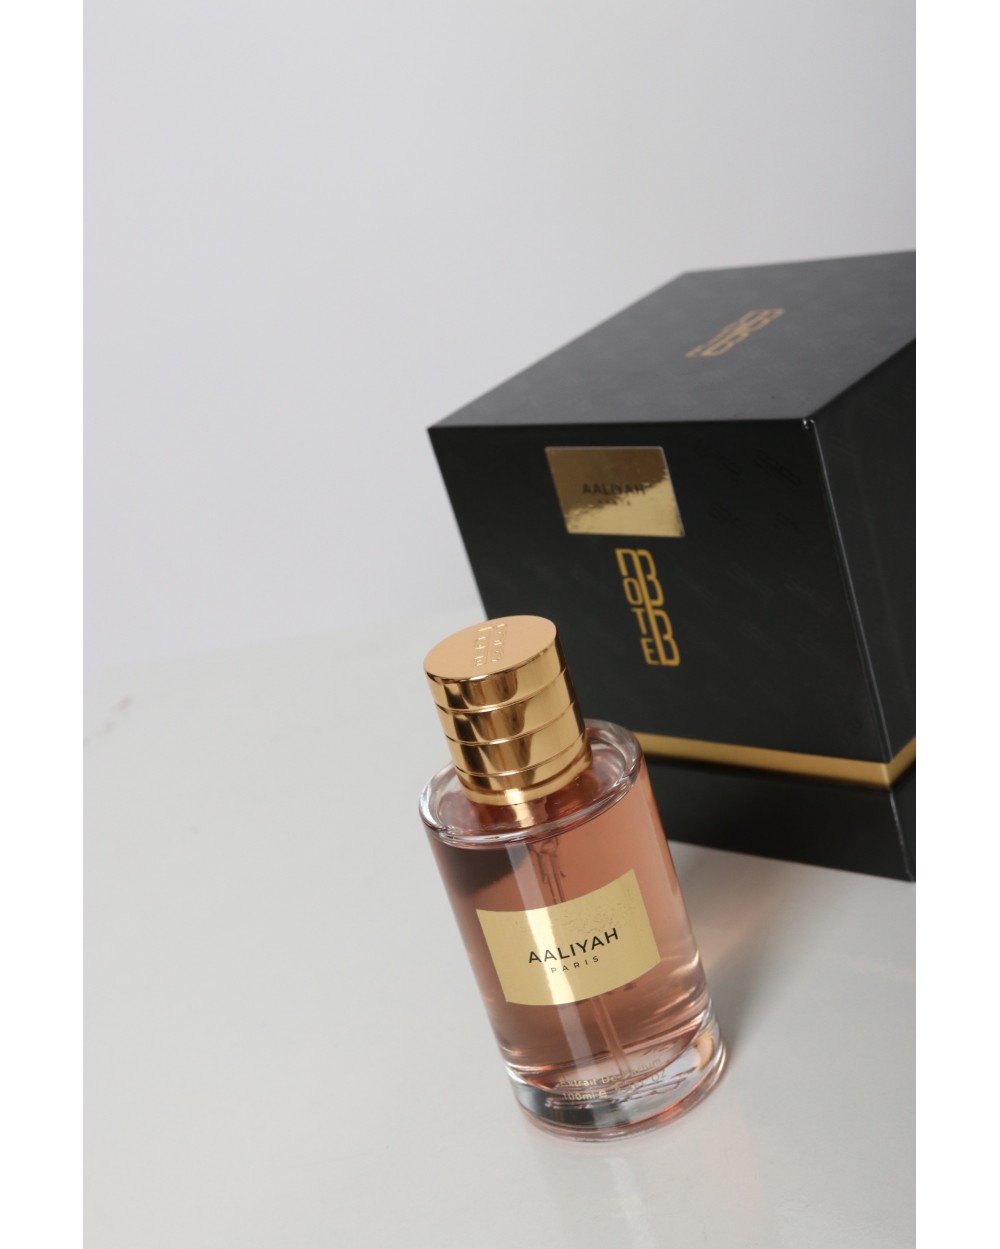 Parfum Aaliyah 100 ml